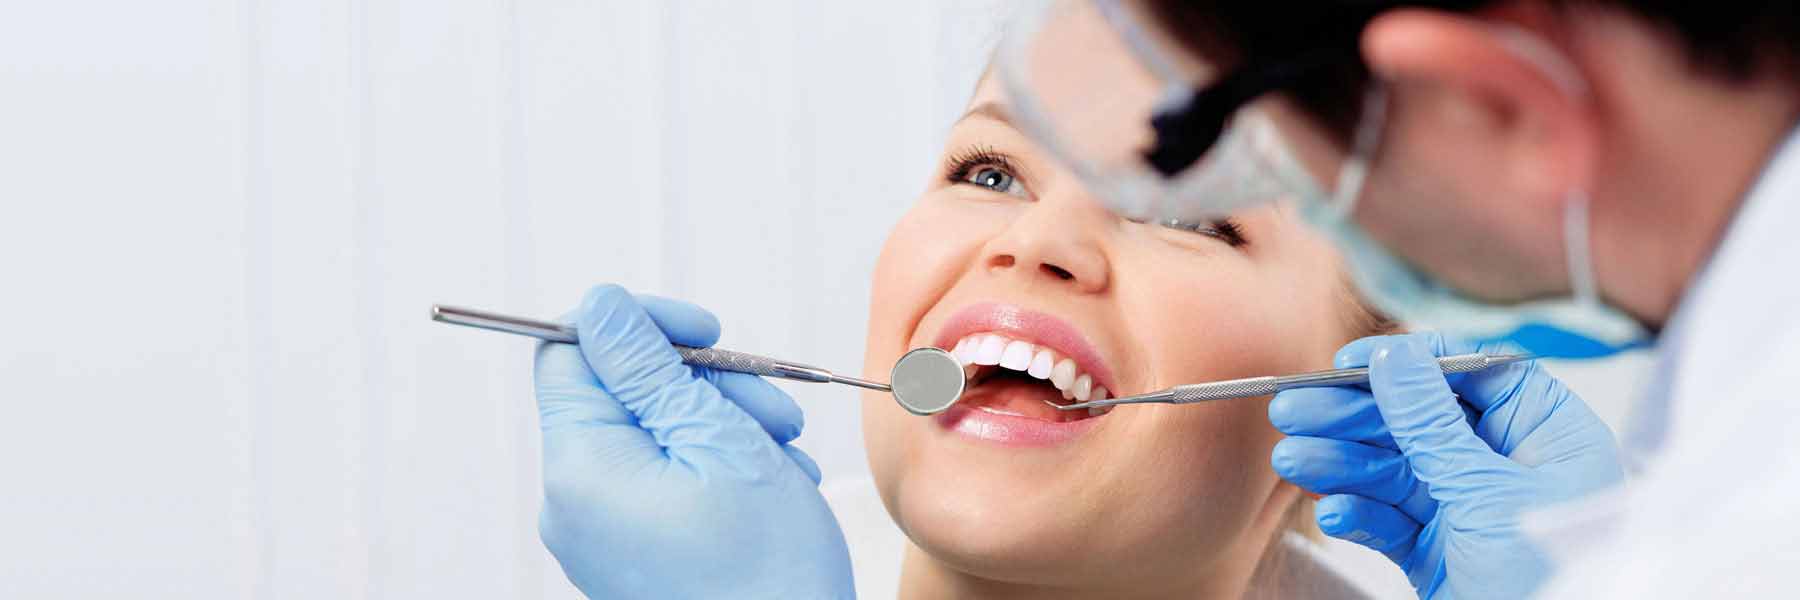 Dental Service in Metford - Tooth N Care